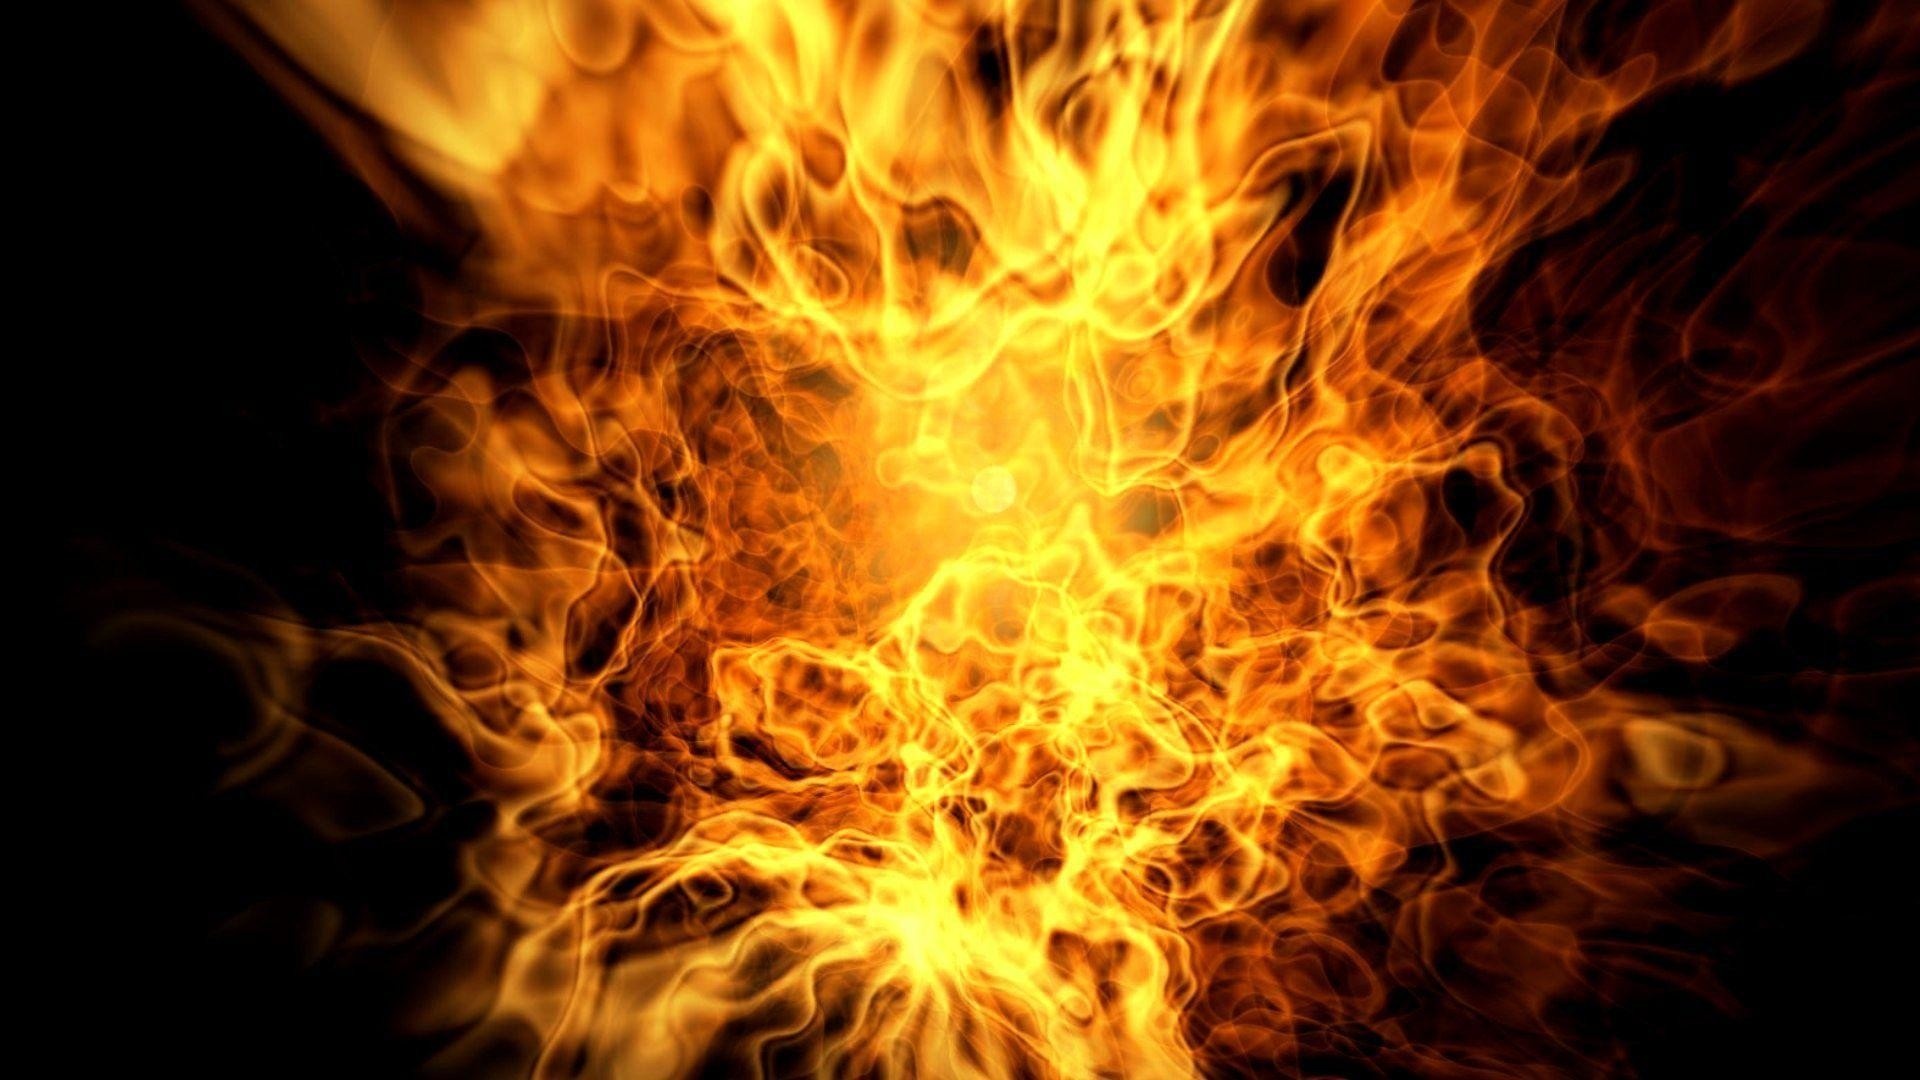 HD fire wallpaper, Fiery glow, Dynamic flames, Vibrant colors, Burning heat, 1920x1080 Full HD Desktop